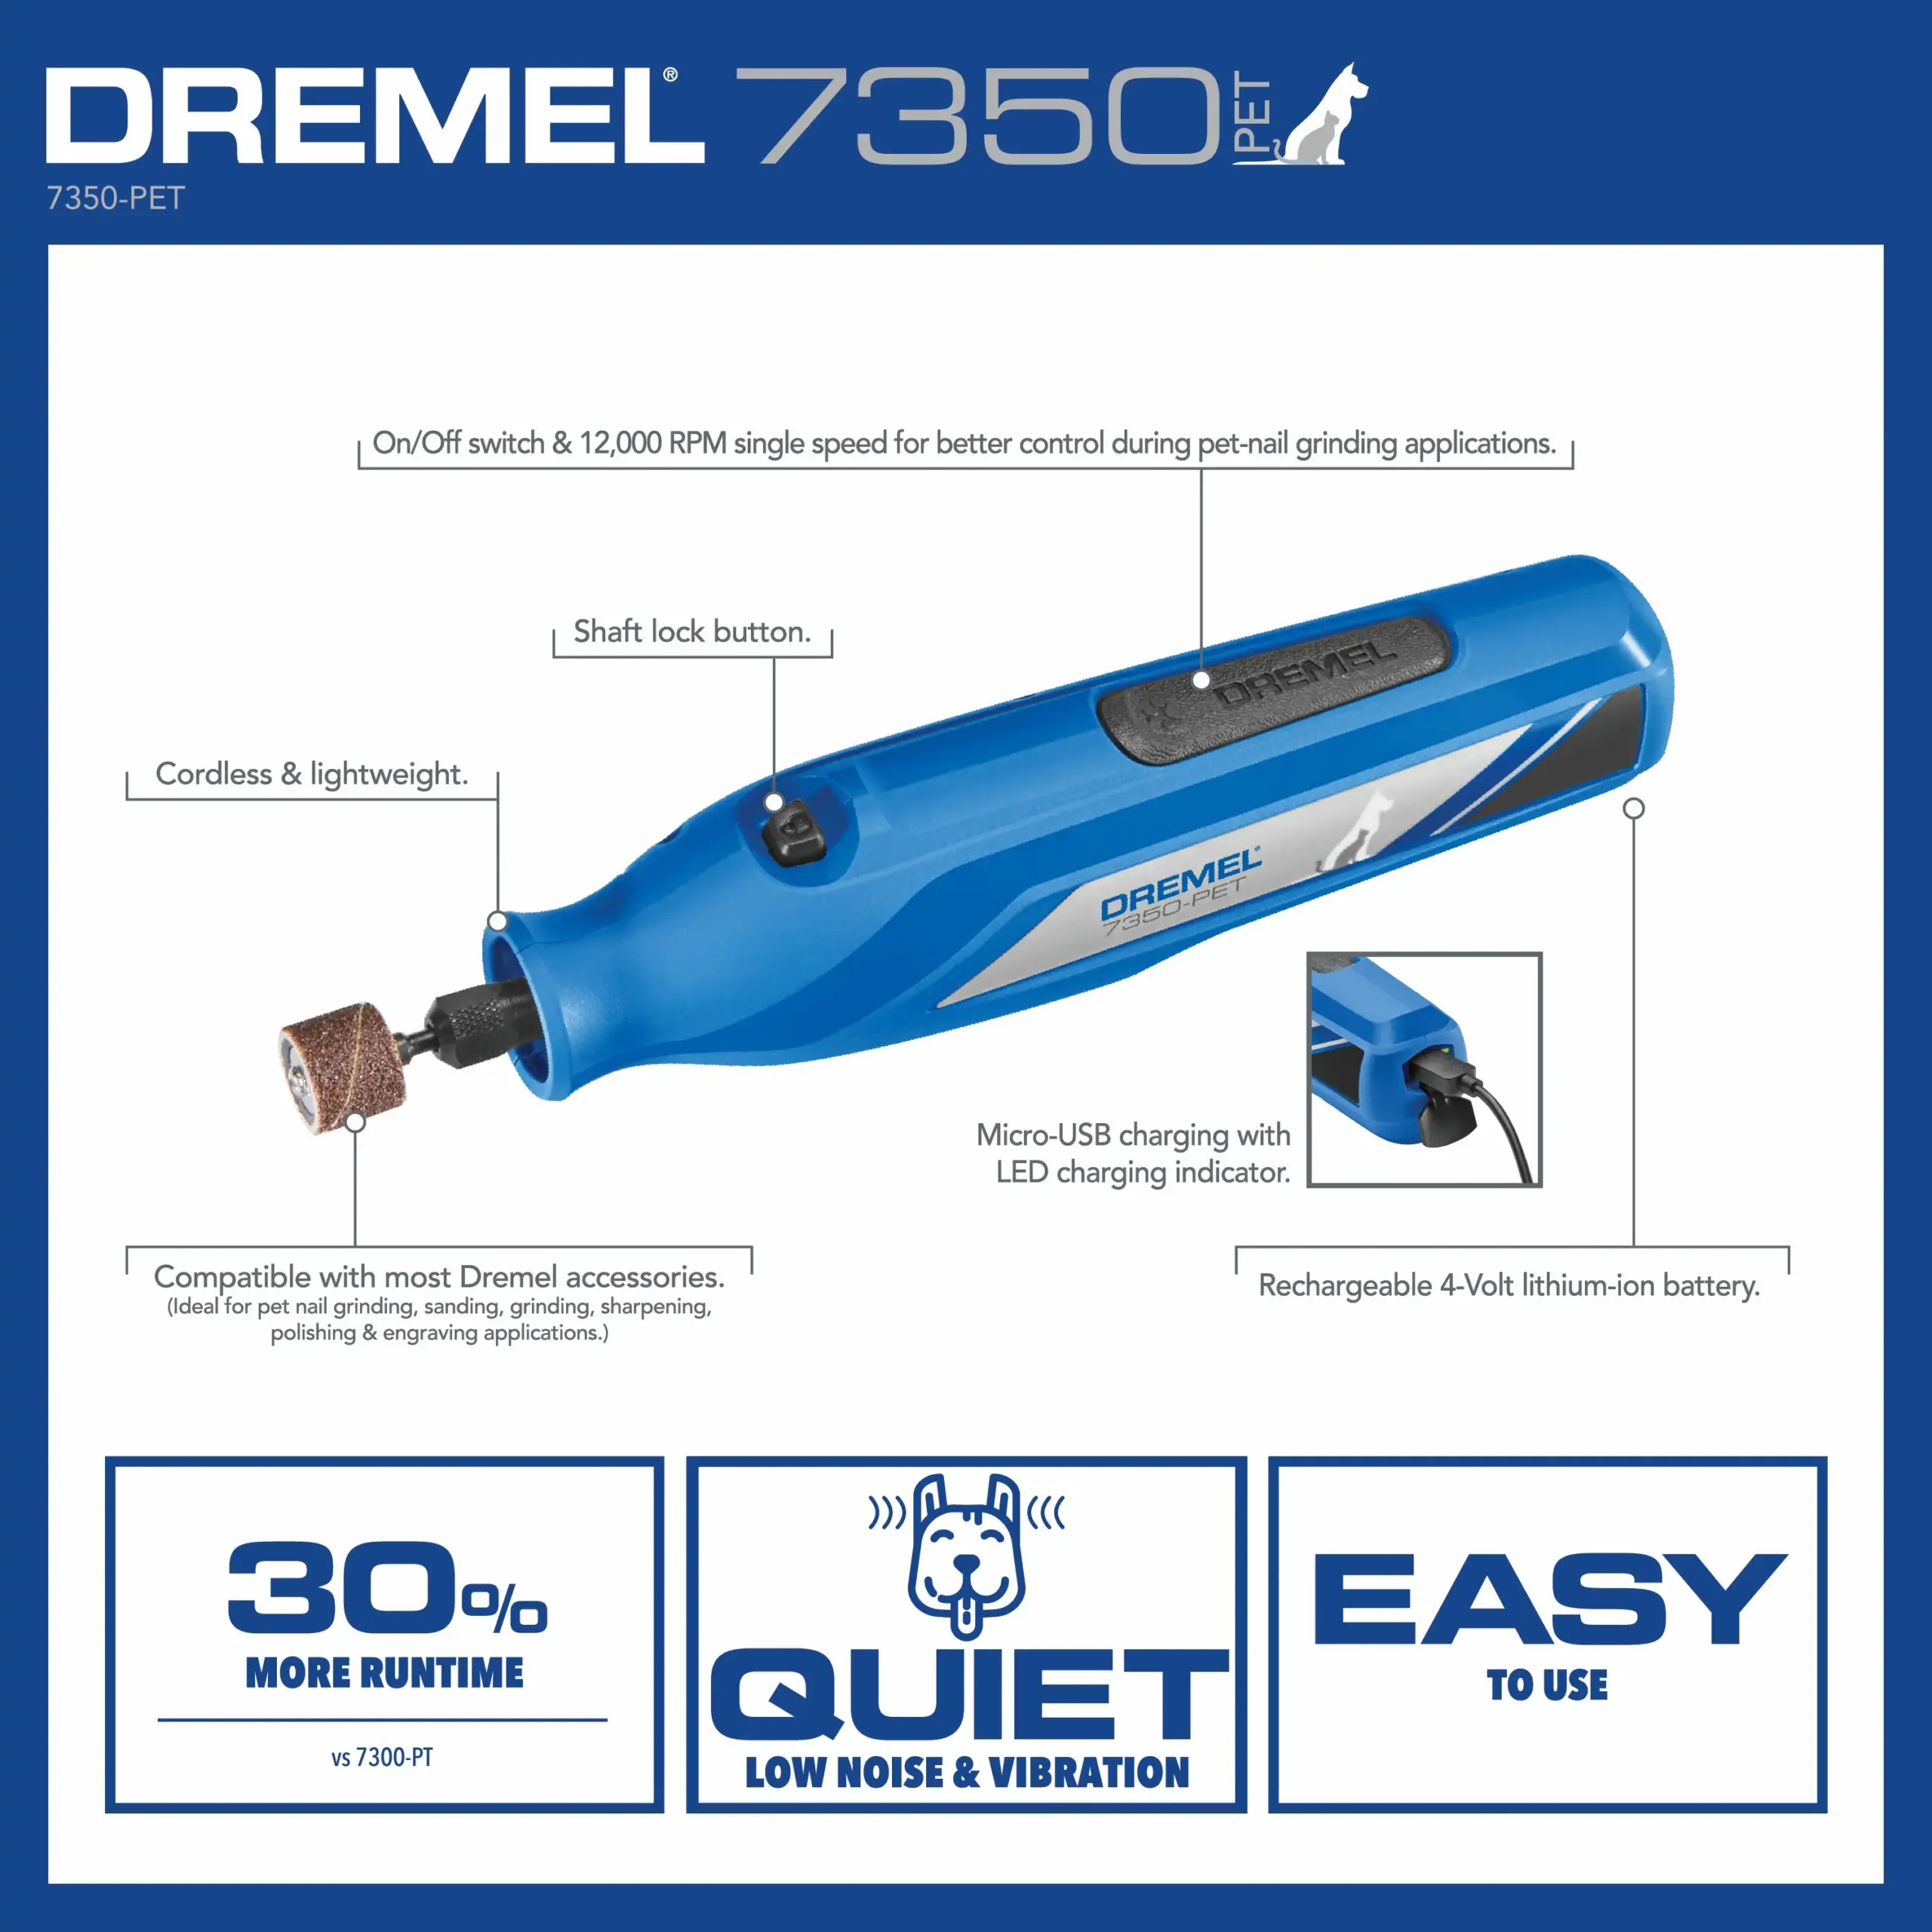 Dremel HSGP-01 Cordless Glue Pen